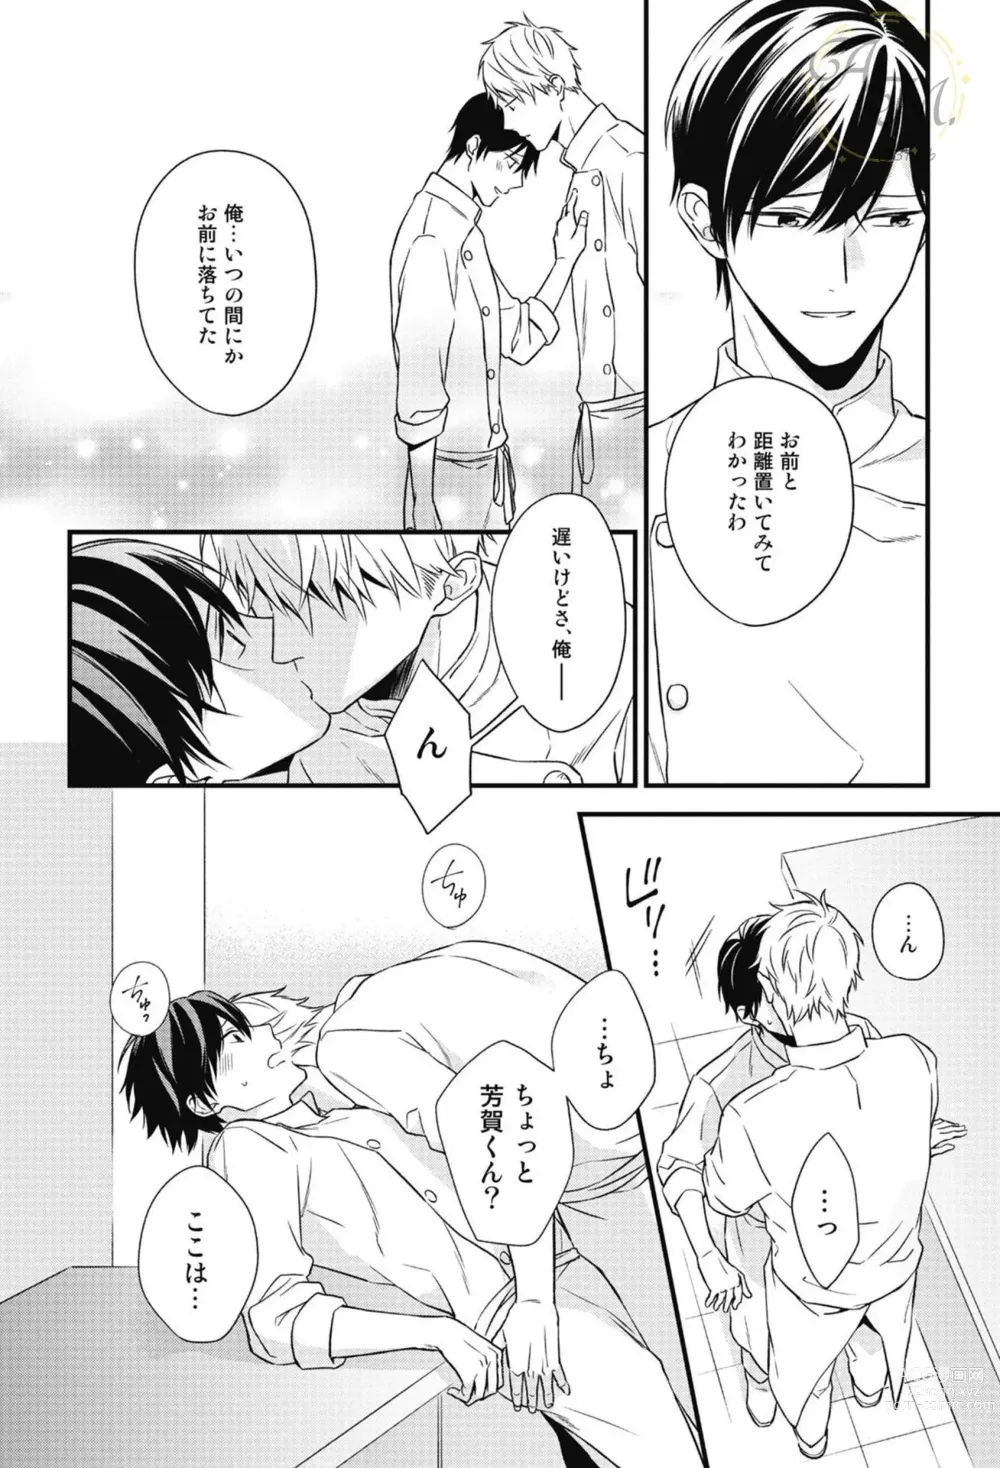 Page 142 of manga SWEET to Yobu ni wa Mada Hayai - Its still early to call a Sweet.